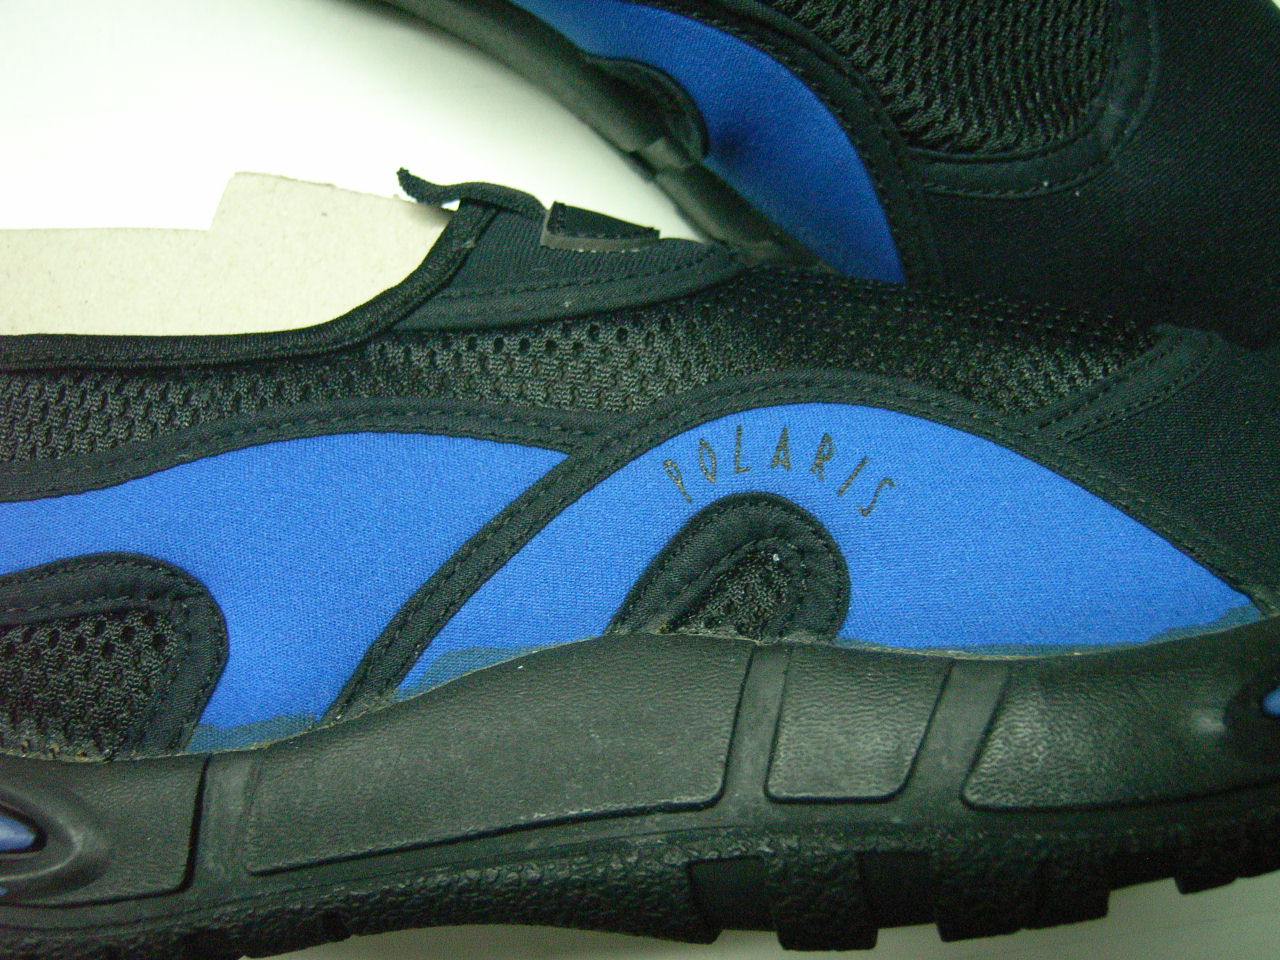 Wassersportschuhe, Aqua Shoes